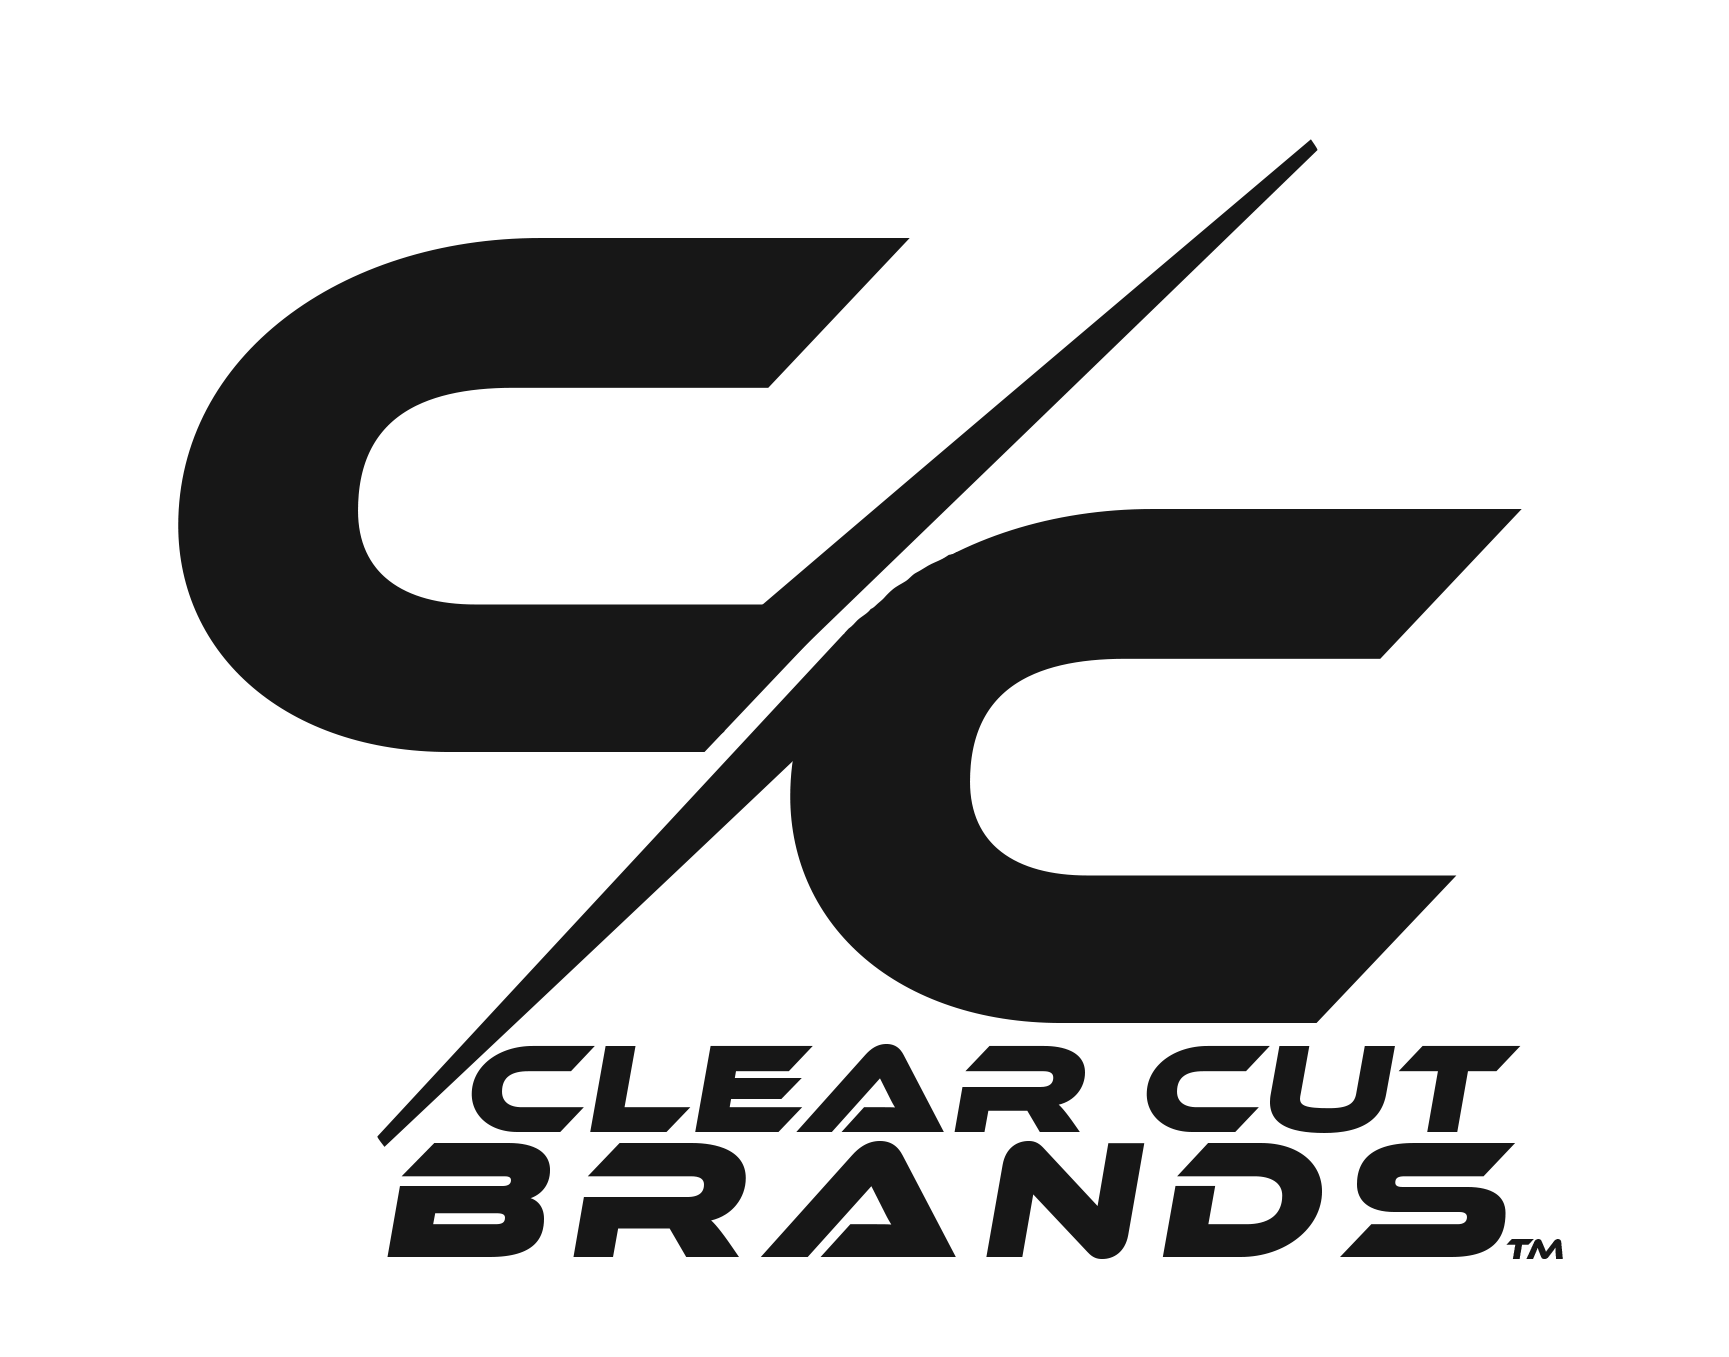 Clear Cut Phocus, LLC